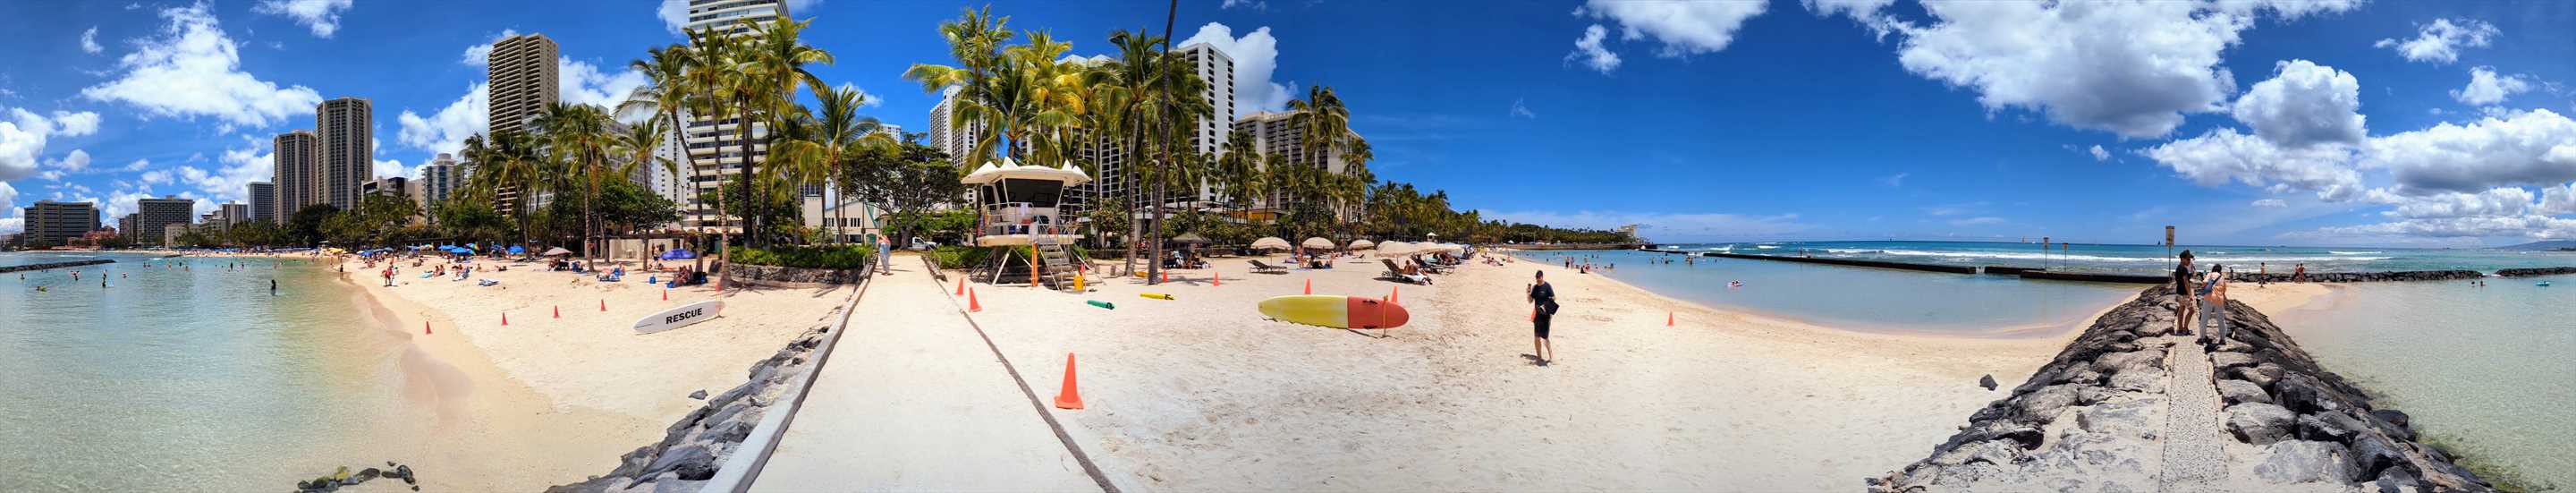 Panorama of Waikiki Beach at Kuhio Beach Park